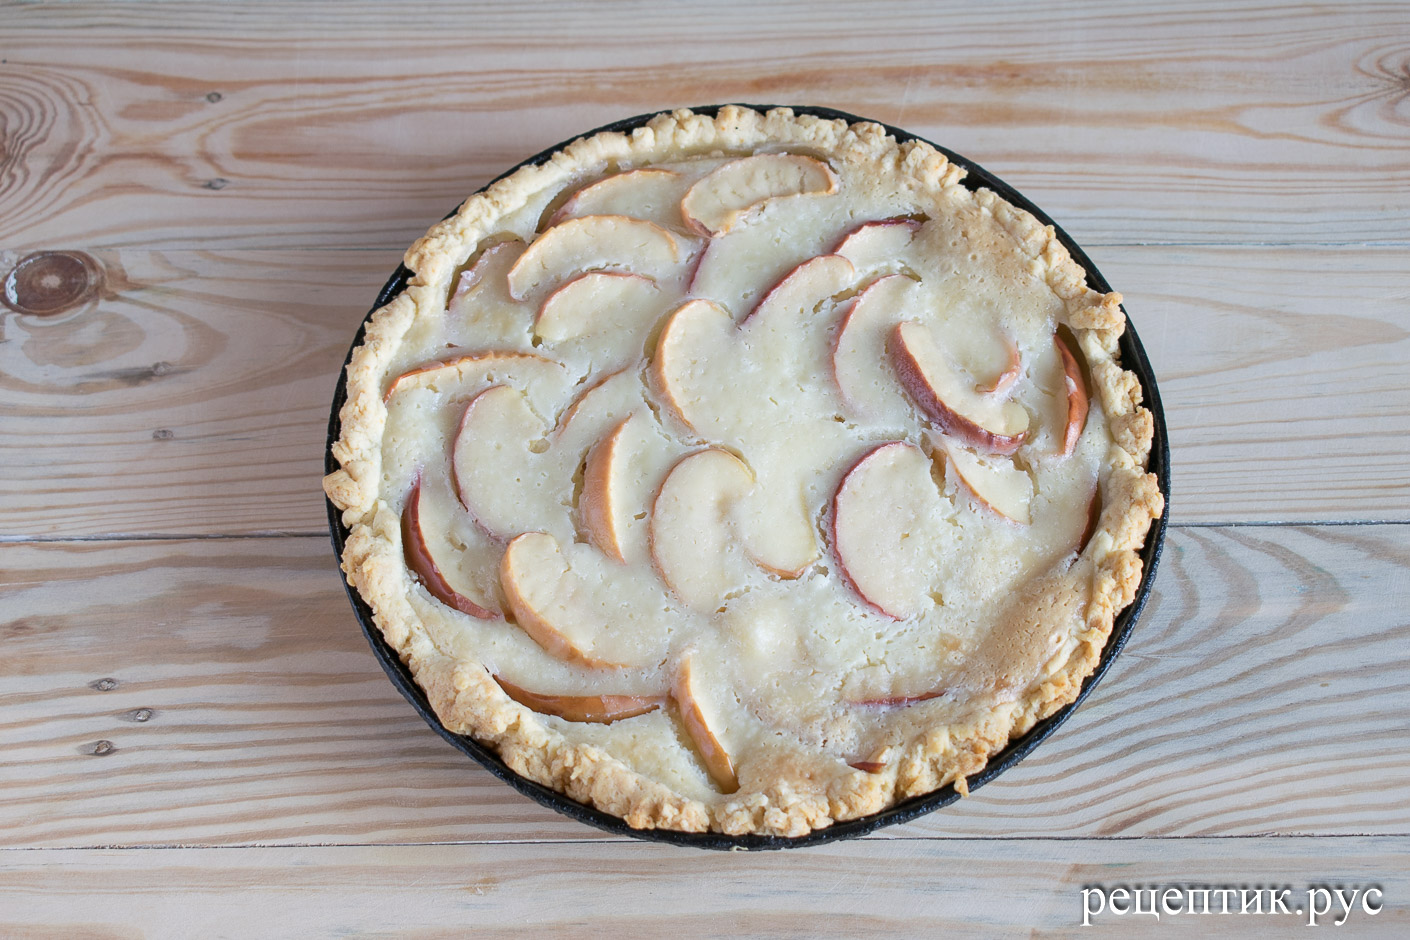 Цветаевский яблочный пирог - рецепт с фото, результат